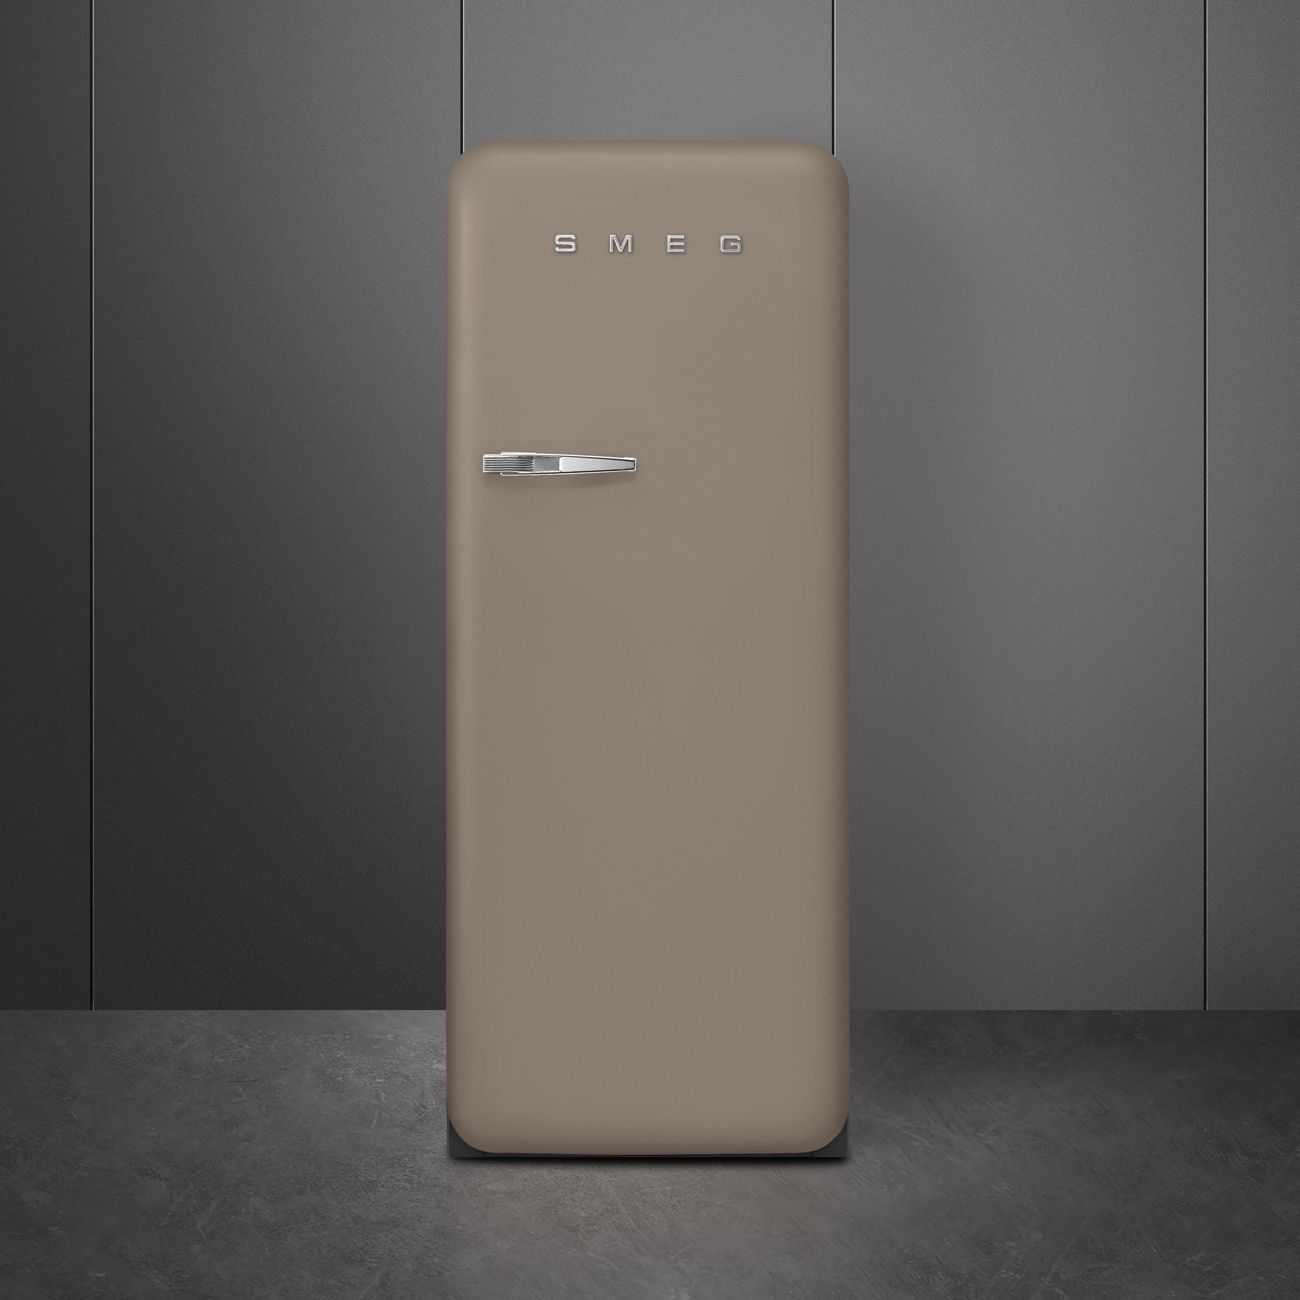 Taupe refrigerator - Smeg_5